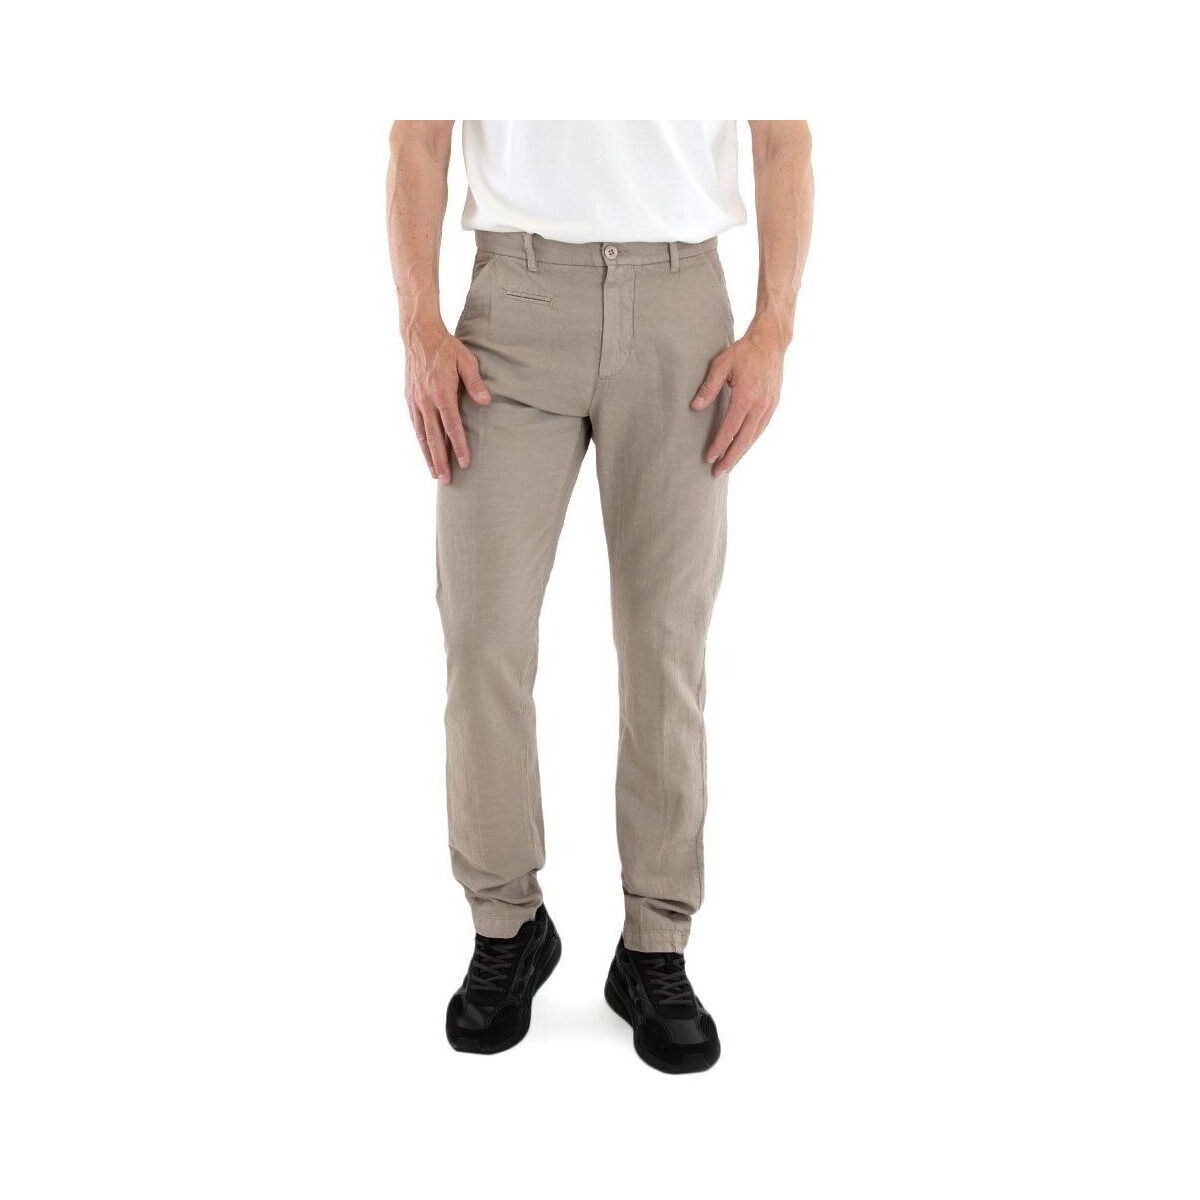 Υφασμάτινα Άνδρας Παντελόνια Uniform CHARLIE SLIM FIT CHINO PANTS MEN ΚΑΦΕ